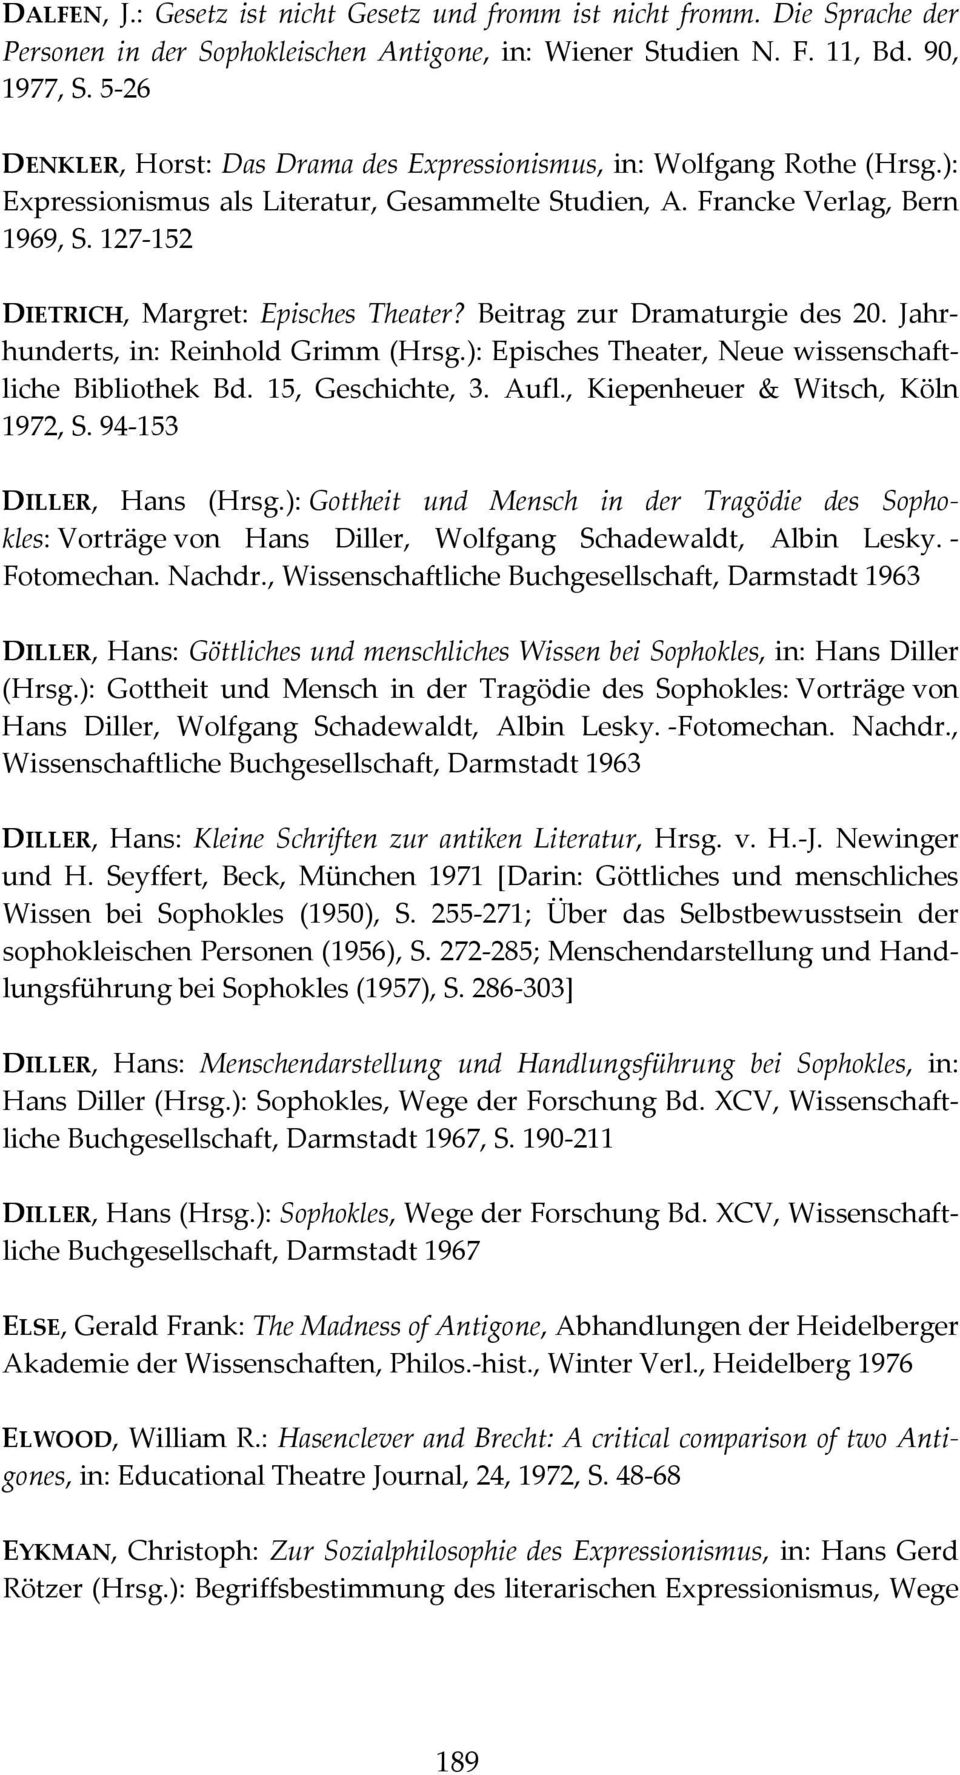 127 152 DIETRICH, Margret: Episches Theater? Beitrag zur Dramaturgie des 20. Jahrhunderts, in: Reinhold Grimm (Hrsg.): Episches Theater, Neue wissenschaftliche Bibliothek Bd. 15, Geschichte, 3. Aufl.